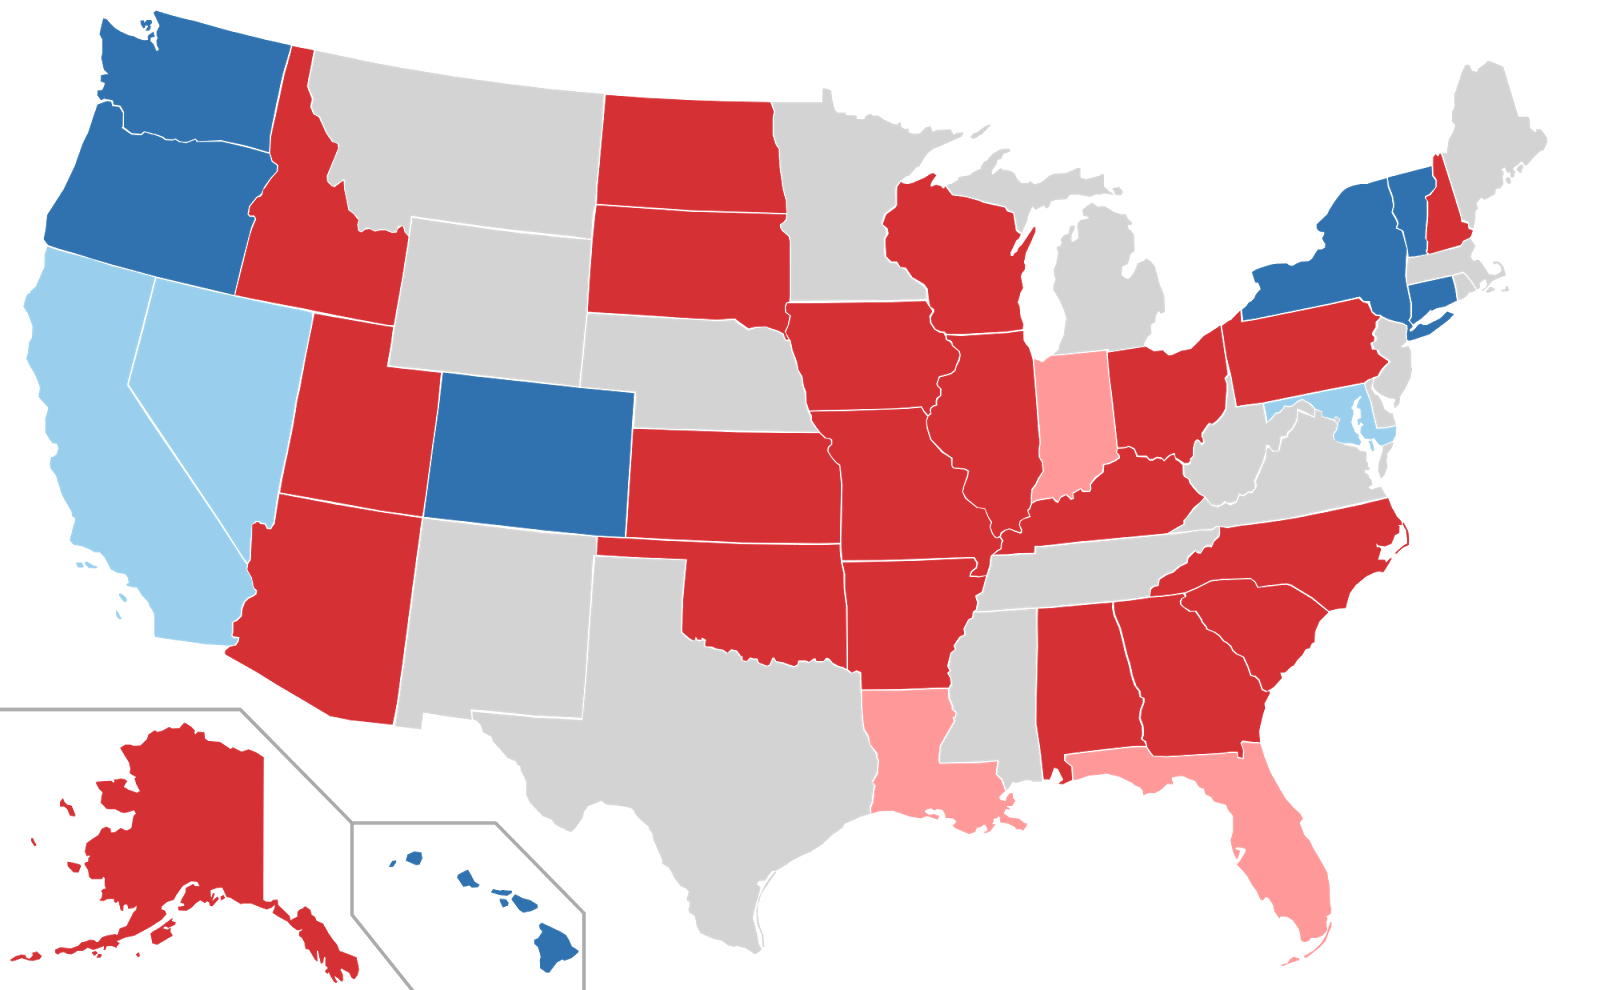 Senate Results 2016